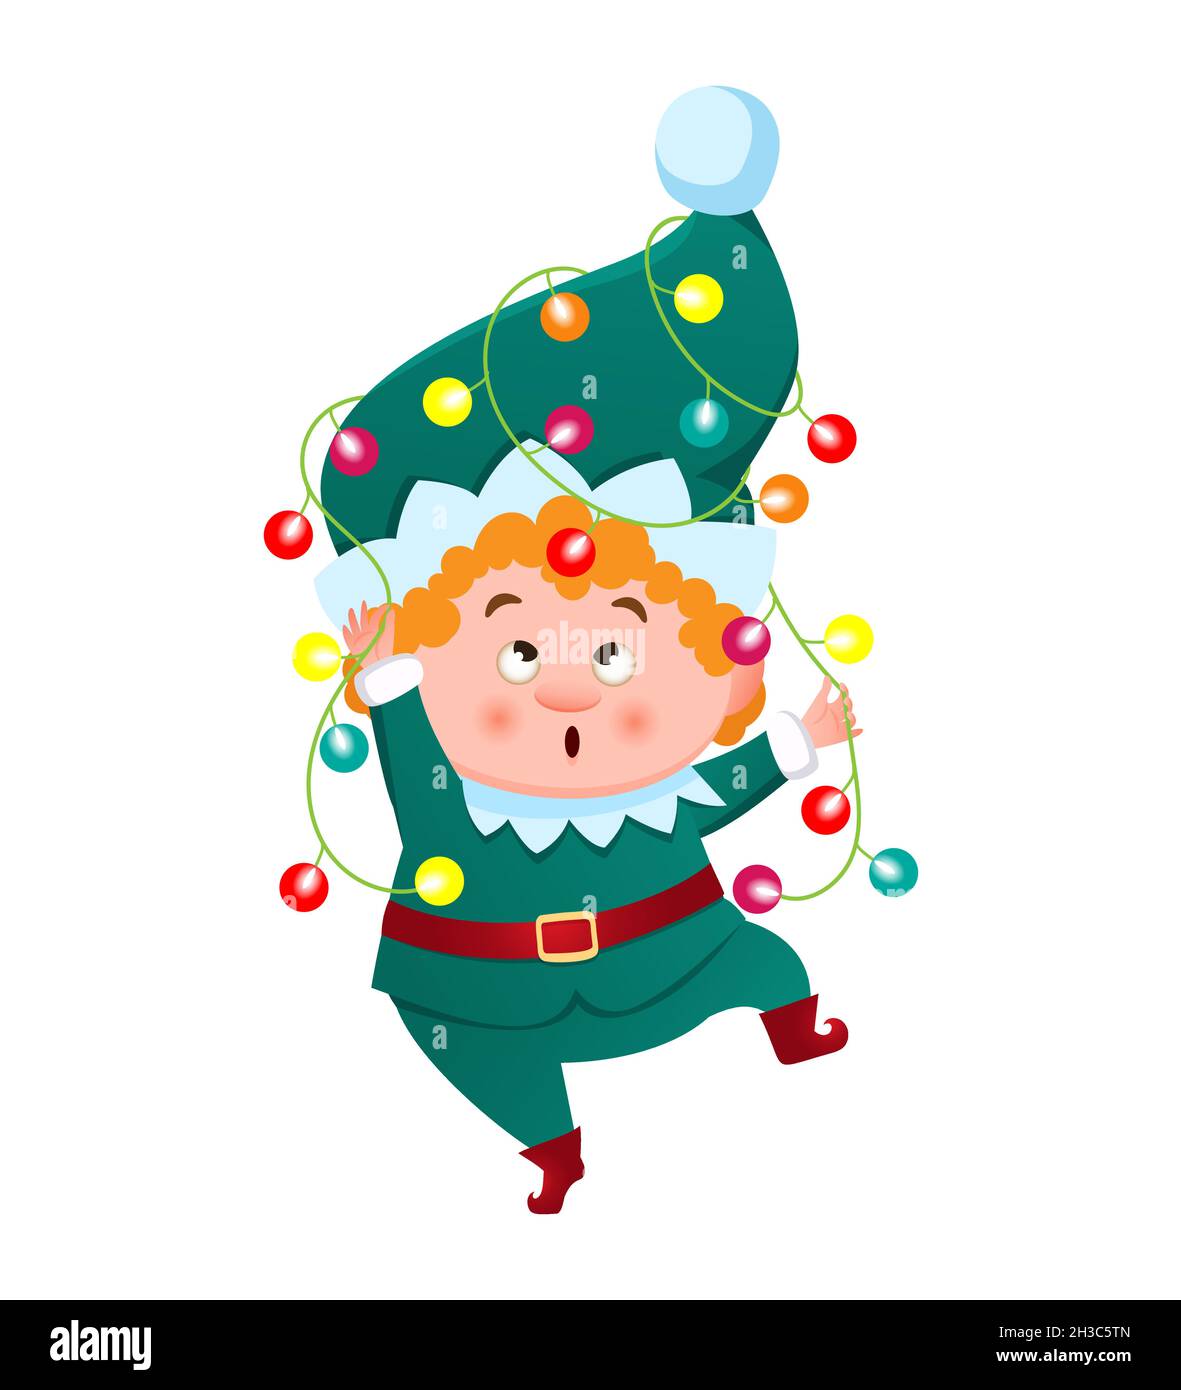 Un joli elfe, gnome, aide du Père Noël, enroulés dans une guirlande de Noël avec des lumières colorées.Illustration vectorielle de style dessin animé Illustration de Vecteur